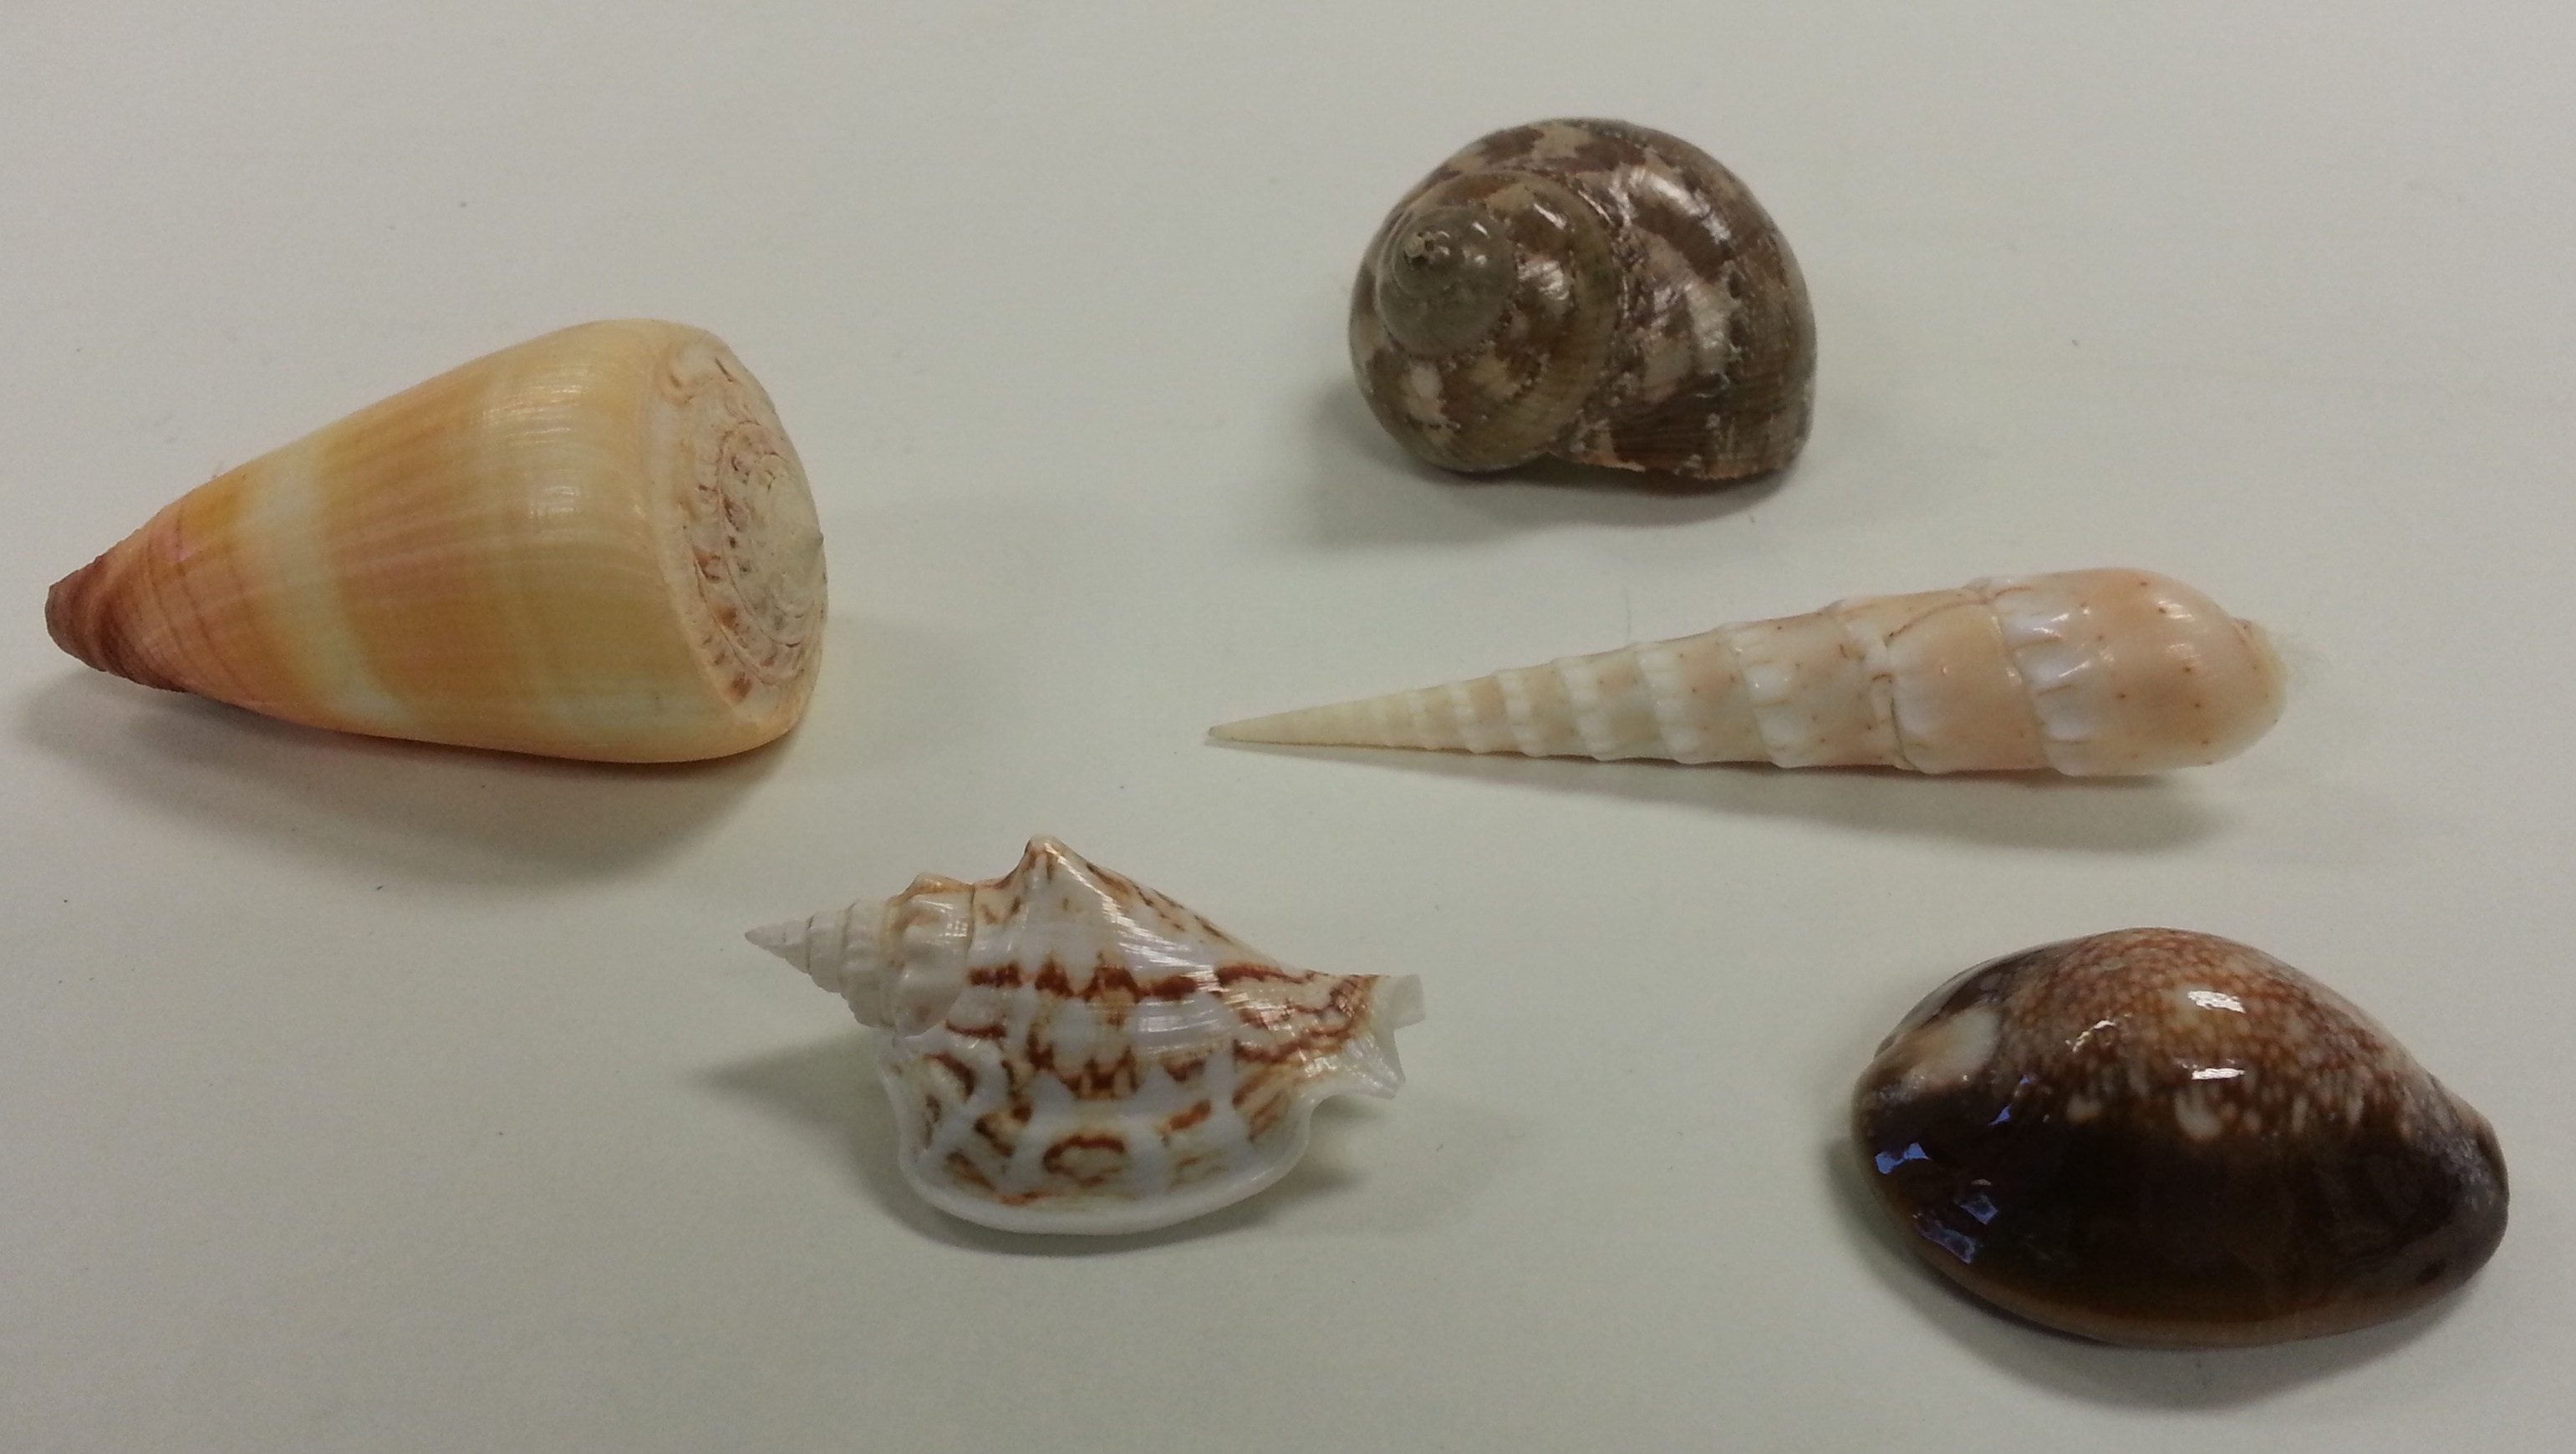 Shell samples